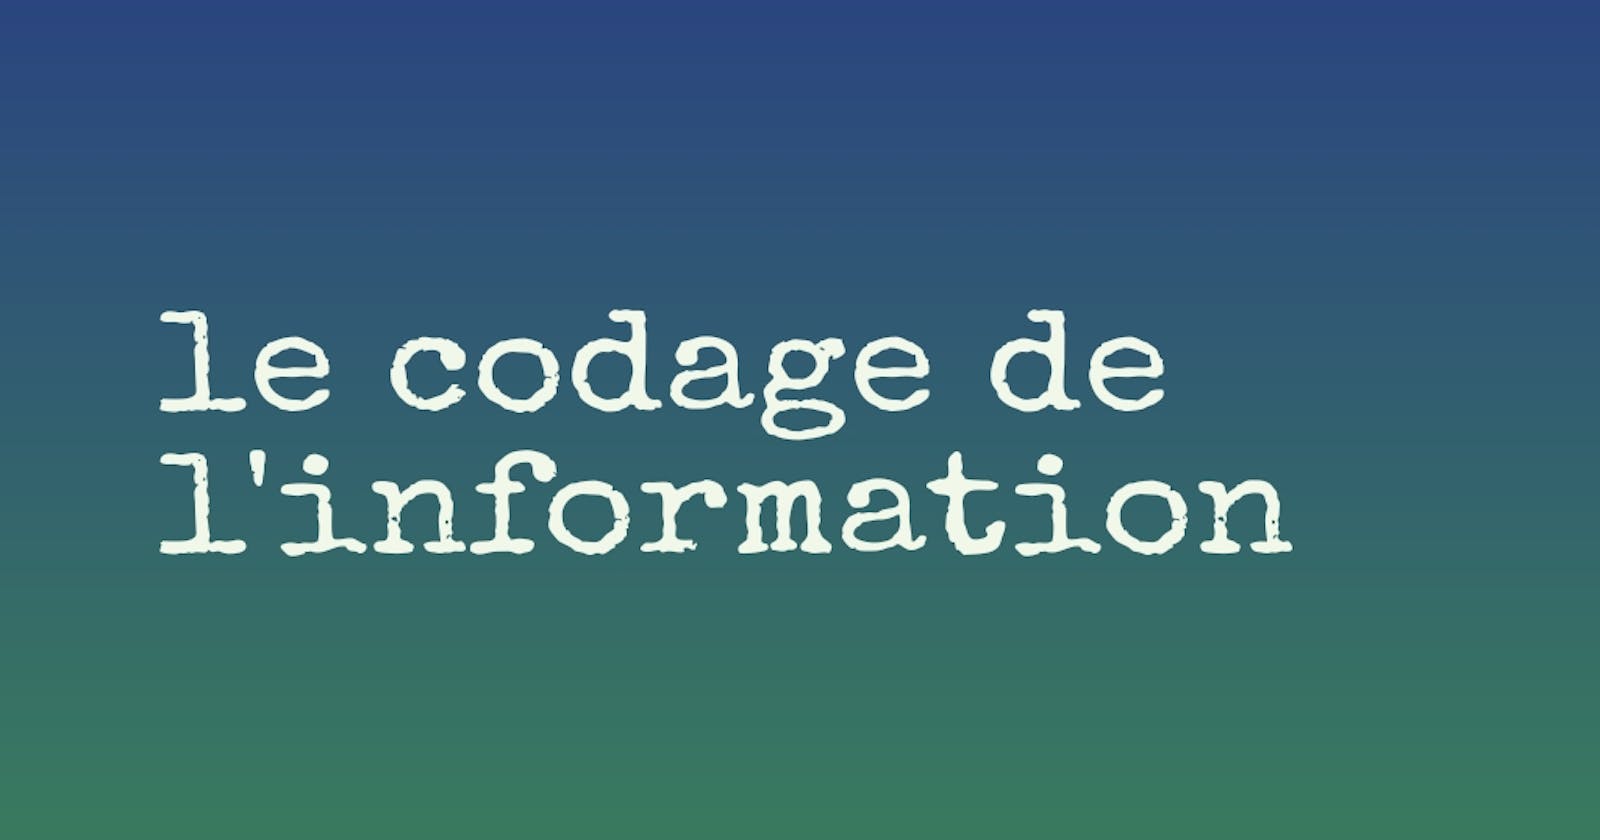 Le codage de l'information